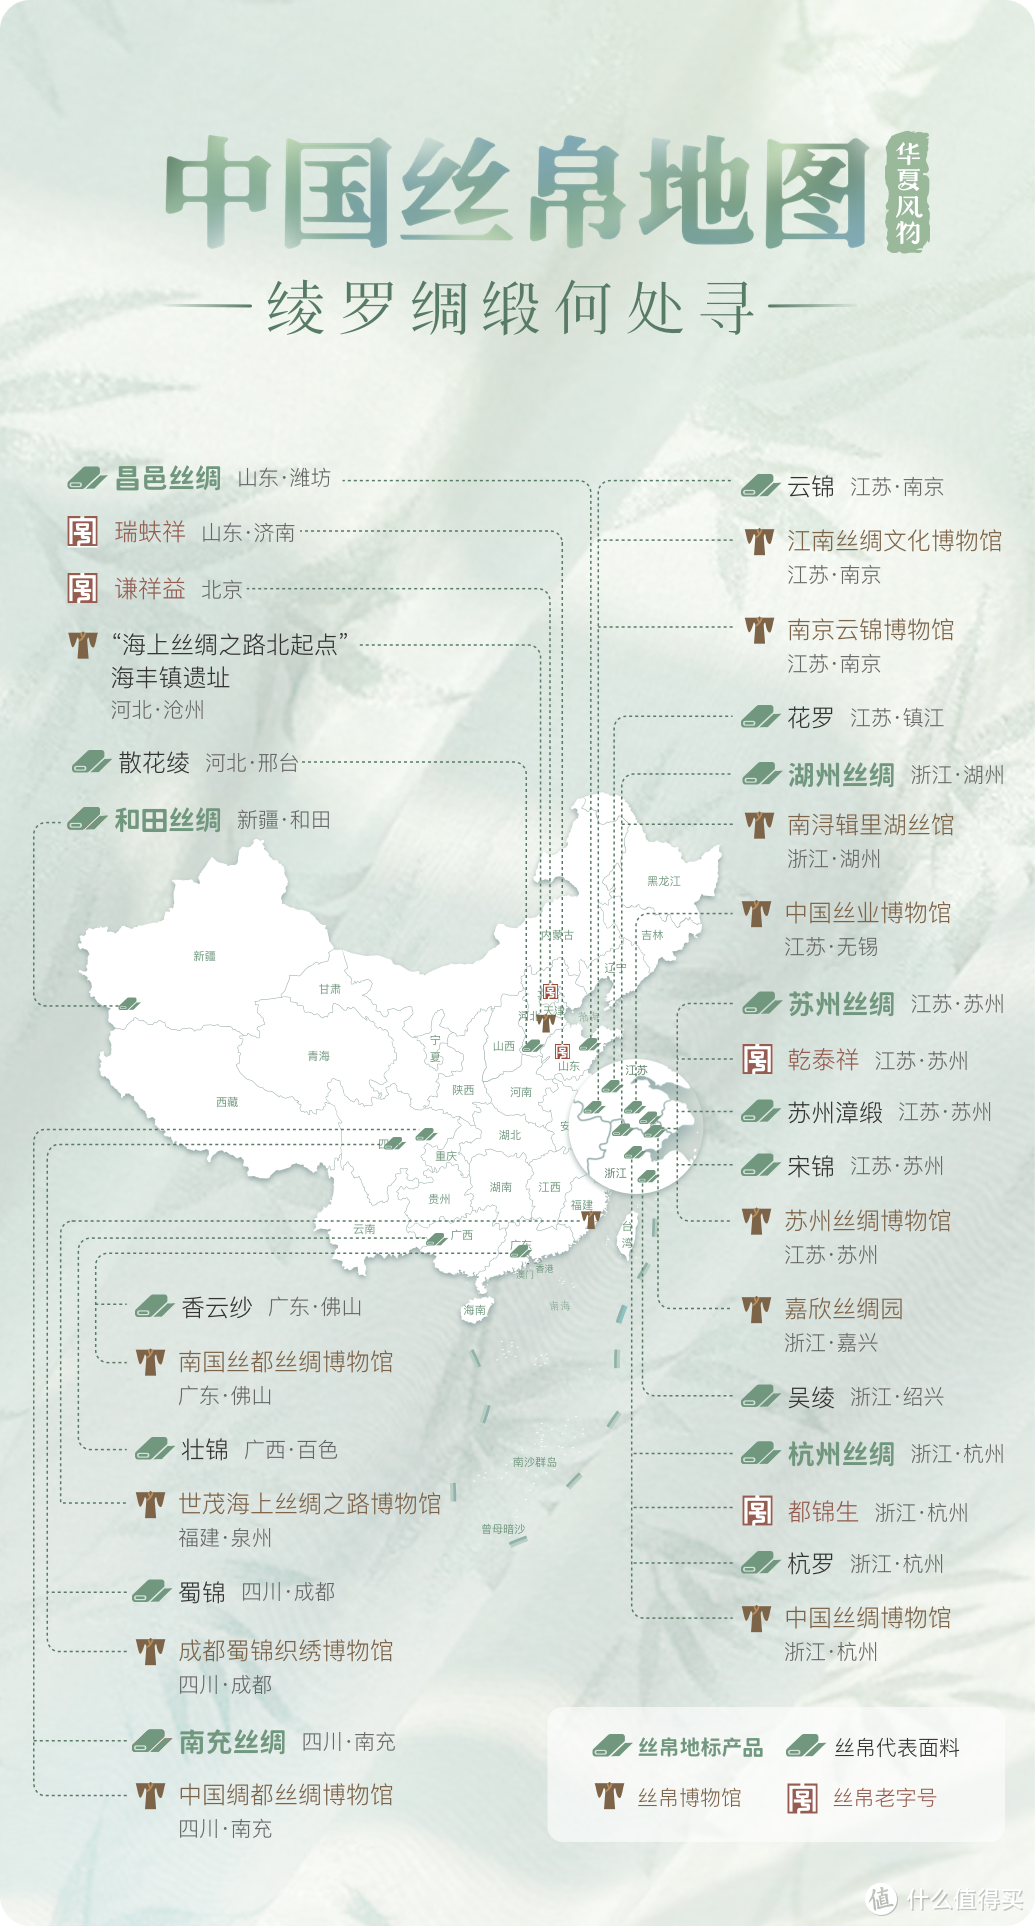 中国丝帛地图——绫罗绸缎何处寻 ©华夏风物